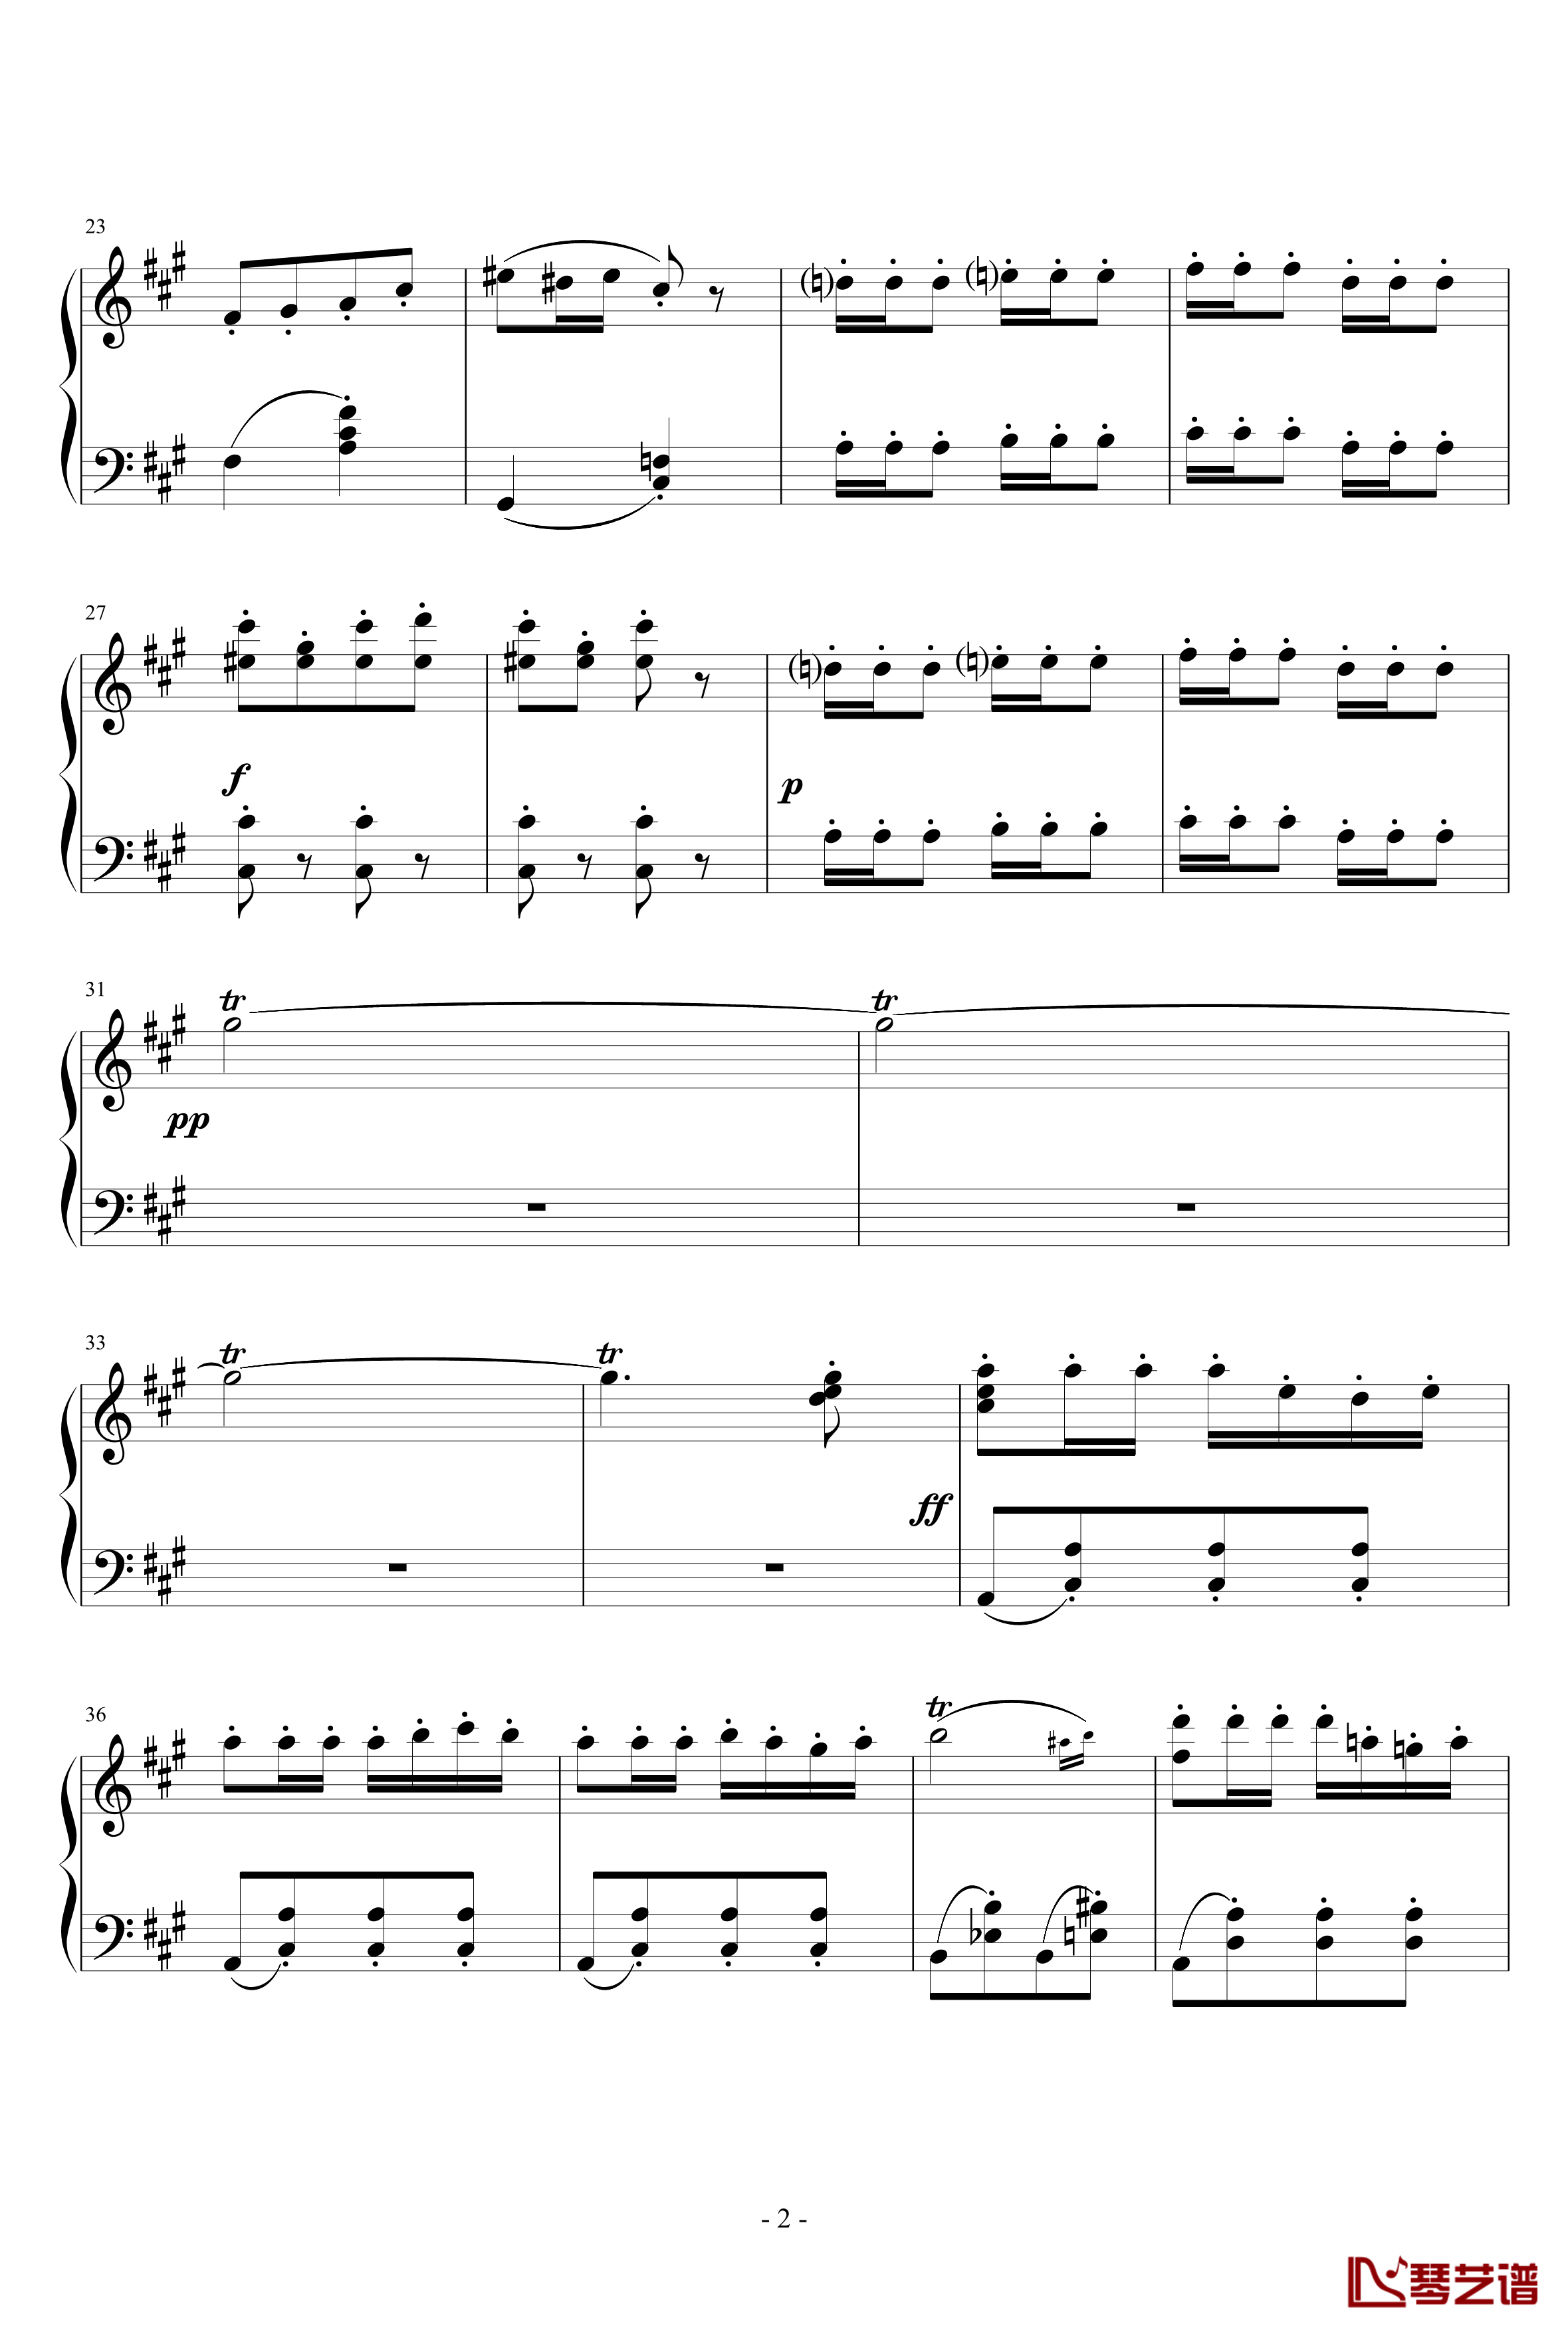 卡门序曲钢琴谱-完整版-比才-Bizet2